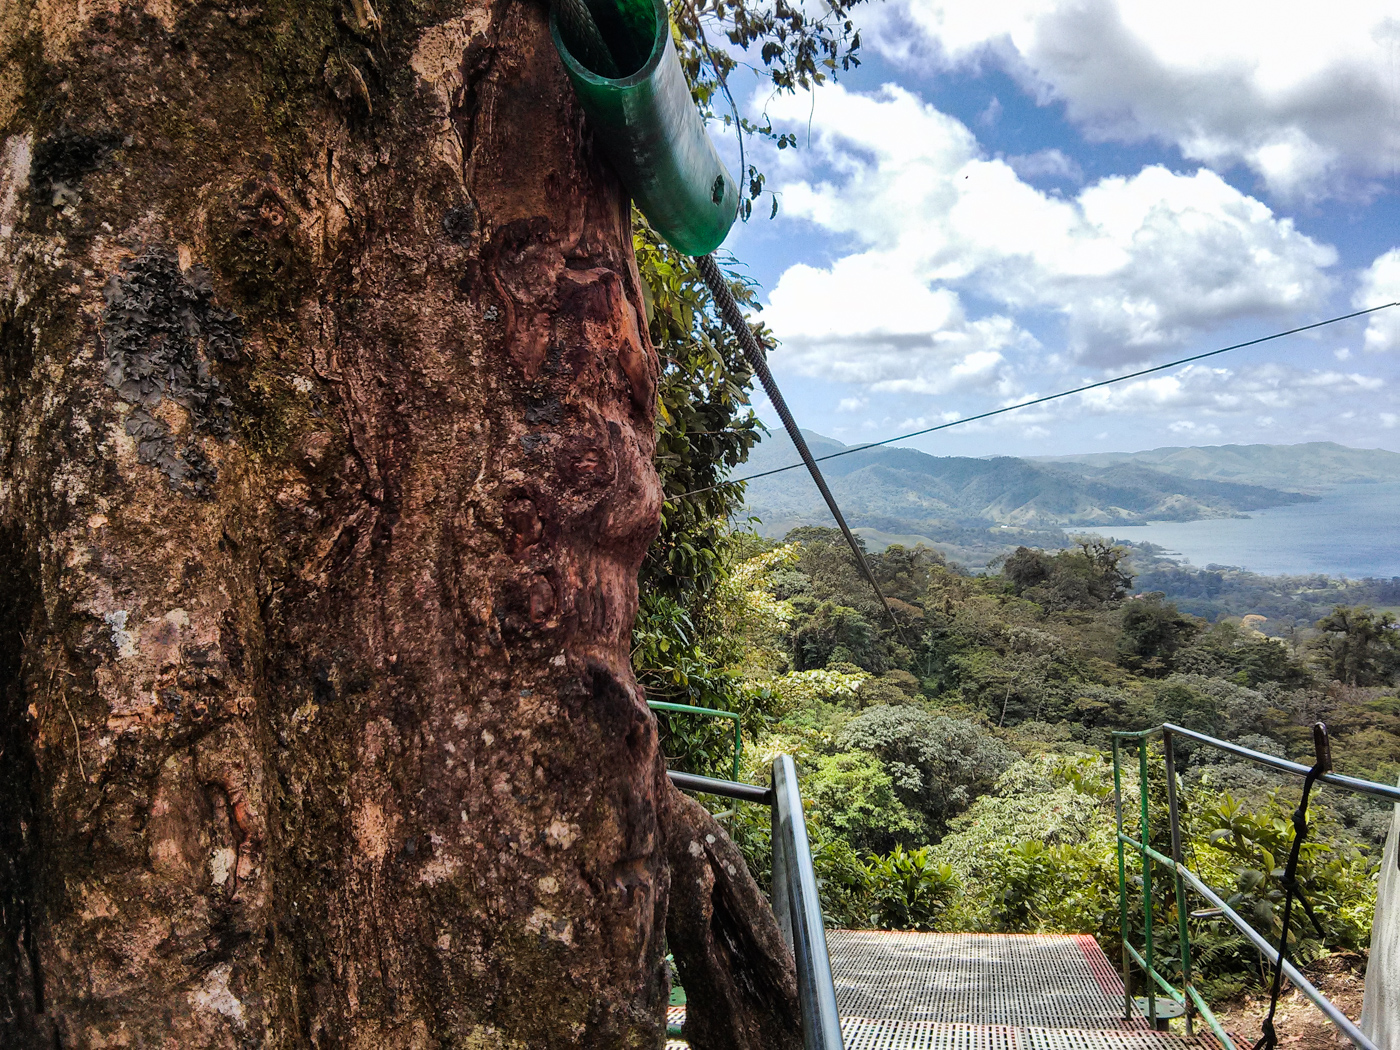 ziplining view on Sky Trek with Sky Adventures Arenal, Costa Rica